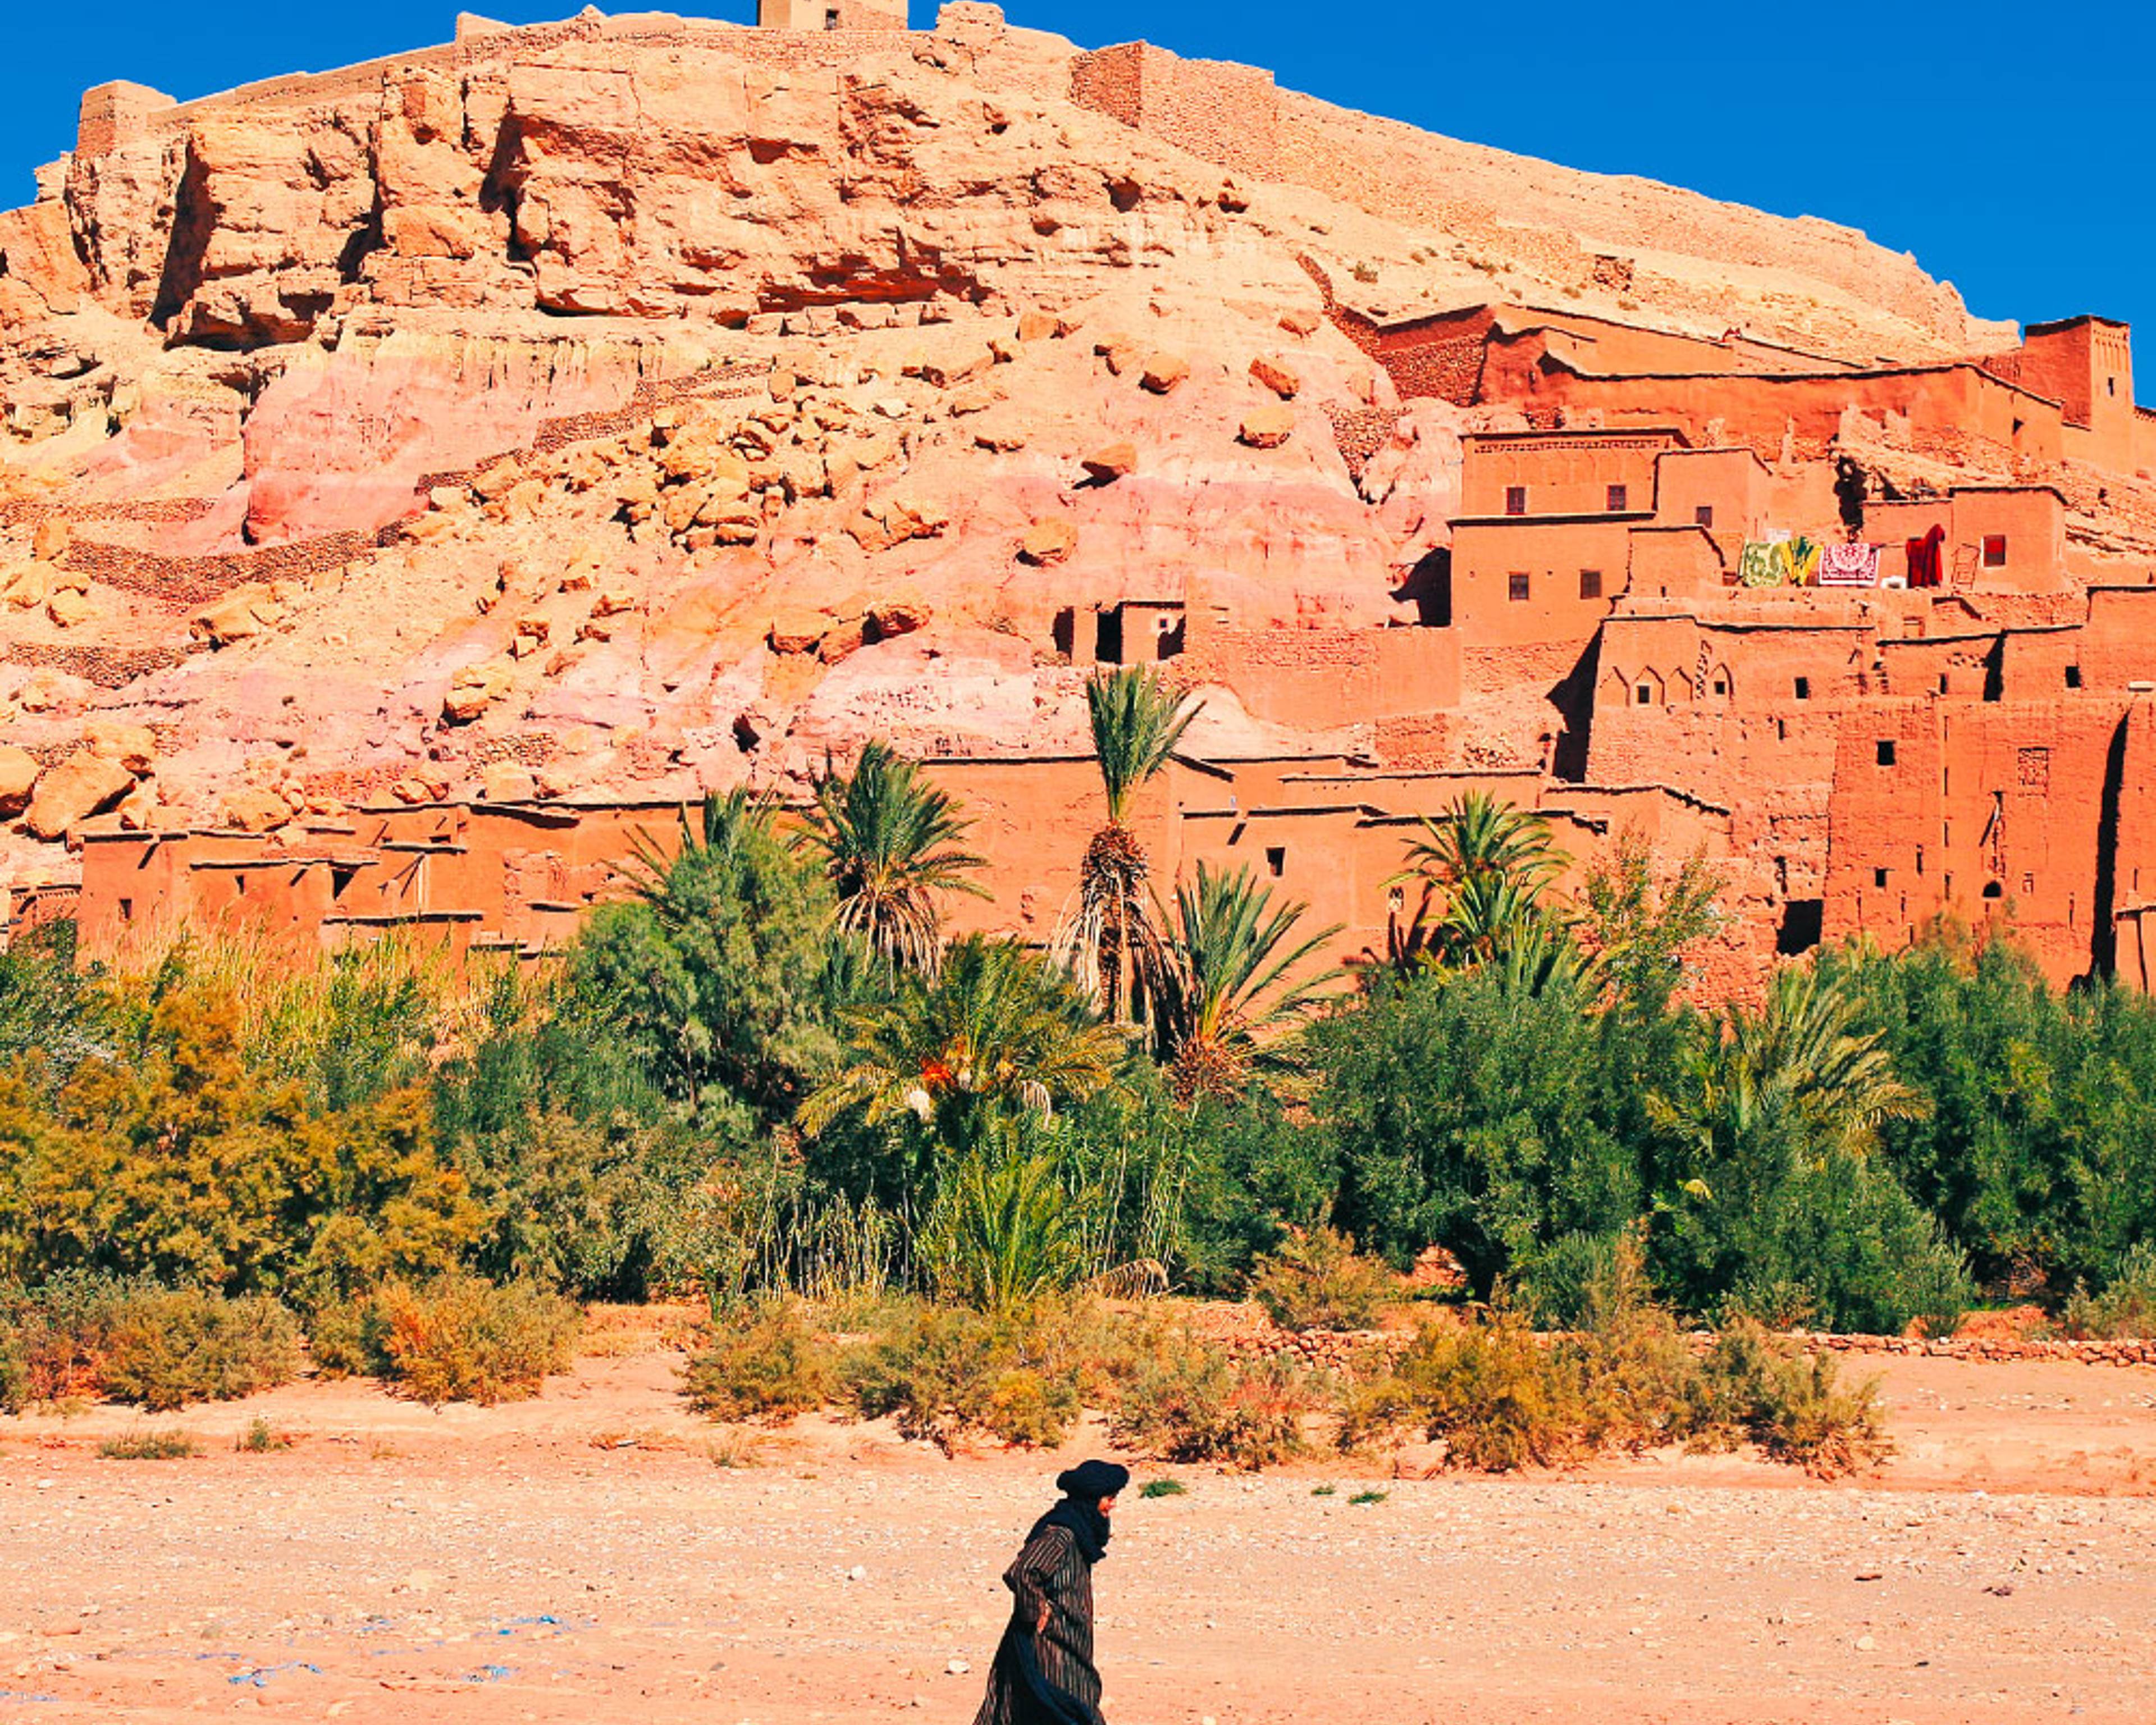 Eine Woche nach Marokko - Reise jetzt individuell gestalten